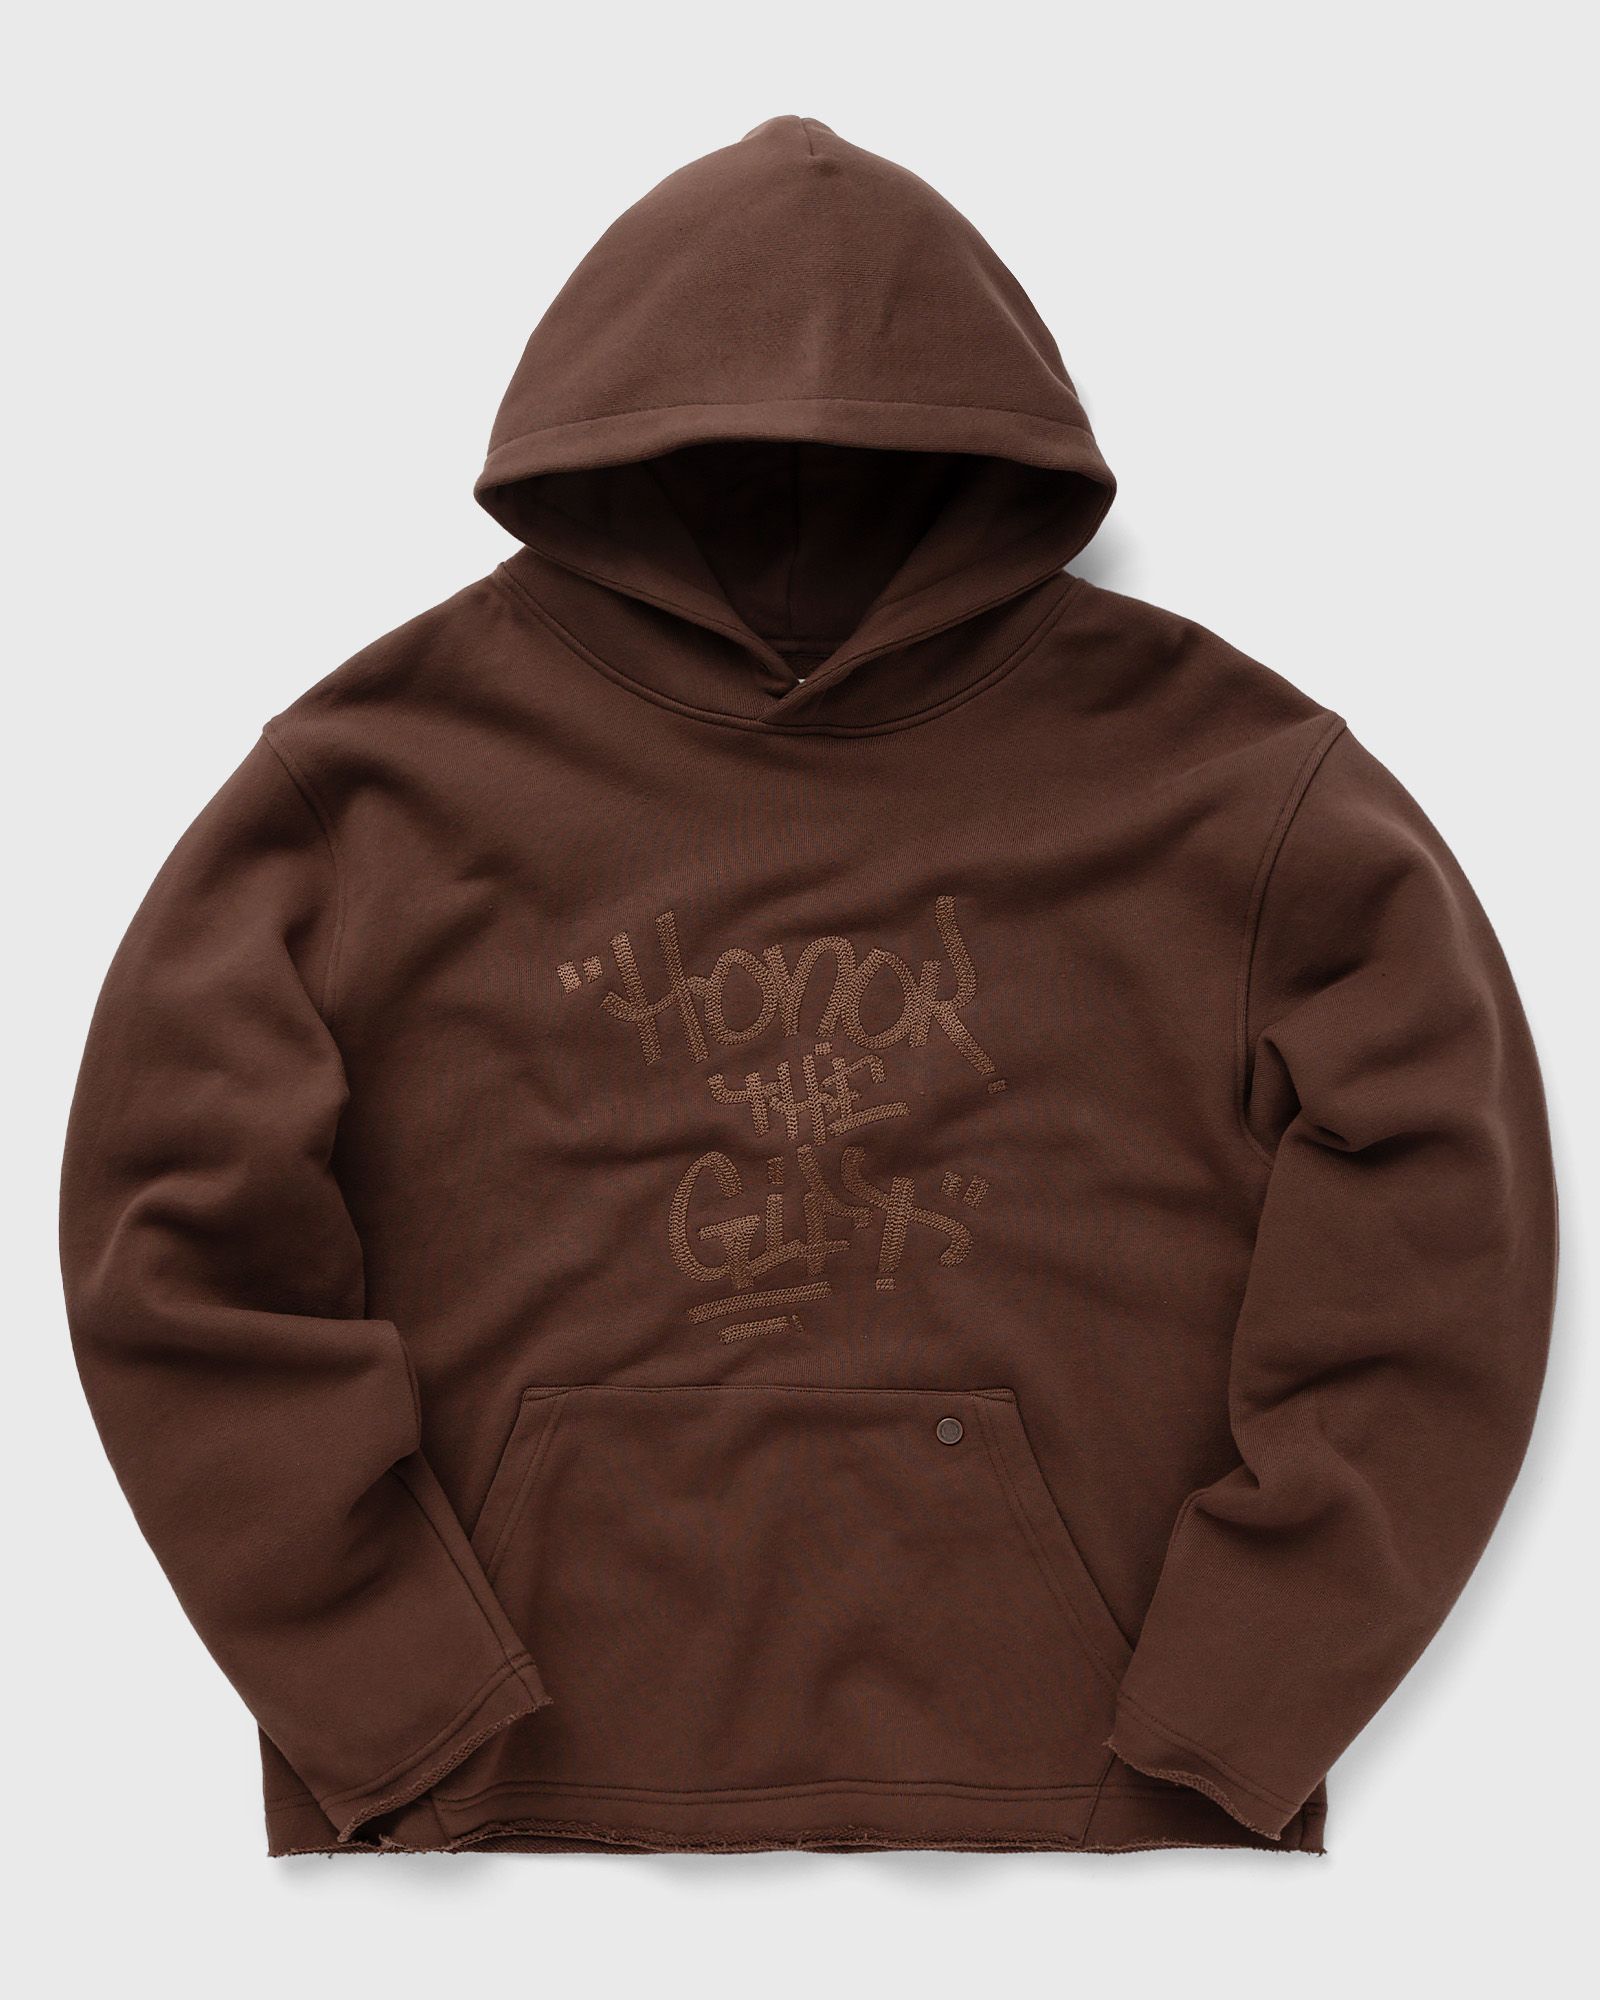 Honor The Gift - script embroidered hoodie men hoodies brown in größe:xl